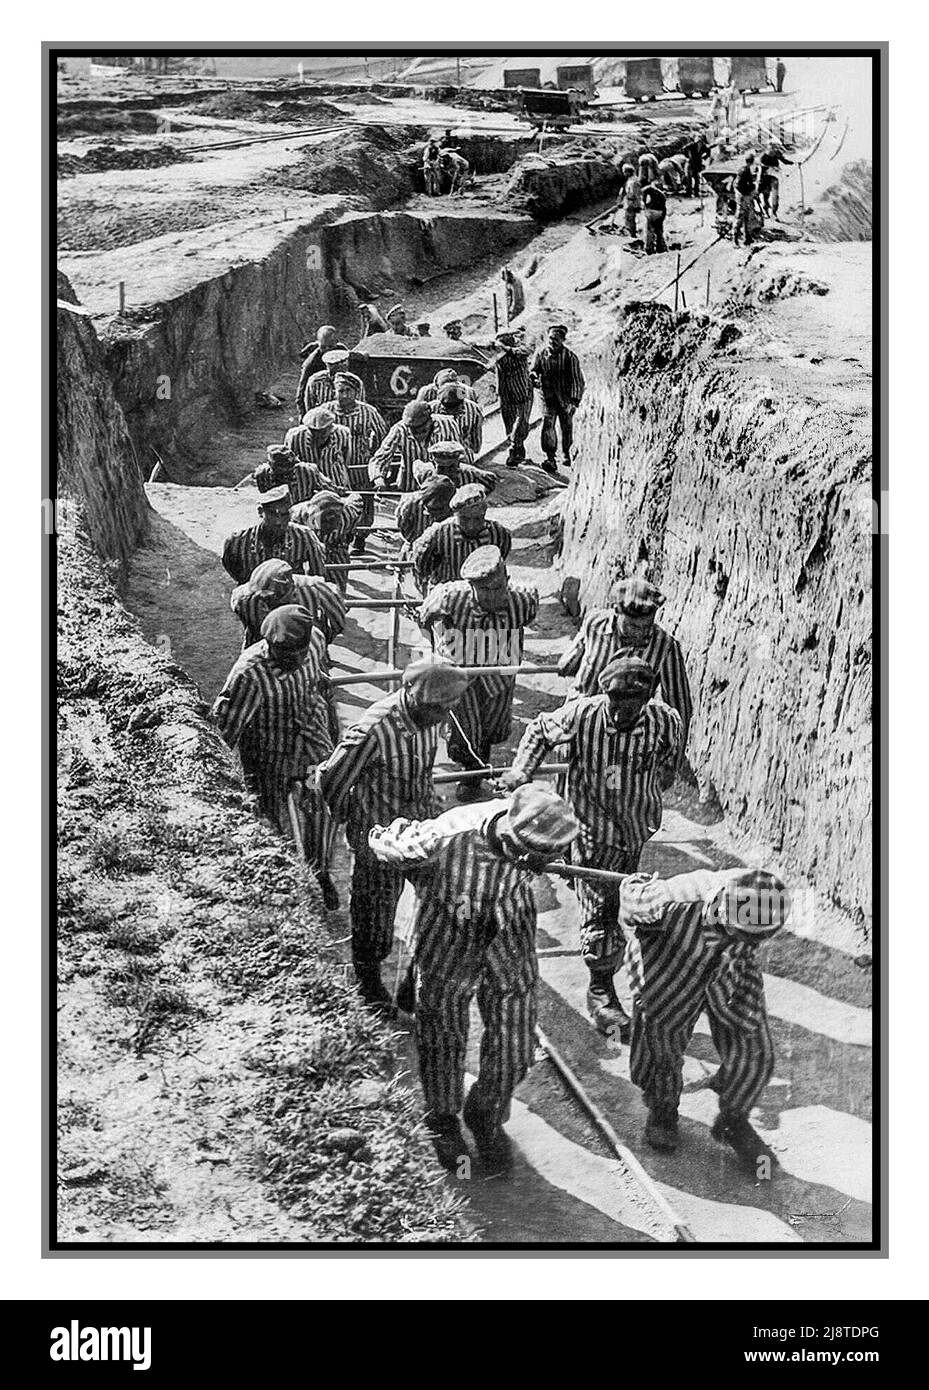 Campo di sterminio nazista tedesco Mauthausen-Gusen (1938-1945) in Austria. Prigionieri nella cava (scale della morte). I prigionieri furono costretti a trasportare massi terrestri e granitici giganti per fornire tunnel sotterranei sotto la città di Sankt Georgen an der Gusen; un lavoro duro forzato era come una tortura. L'esercito americano ha liberato questo campo di sterminio e ha sparato il comandante del campo Franz Ziereis. Foto Stock